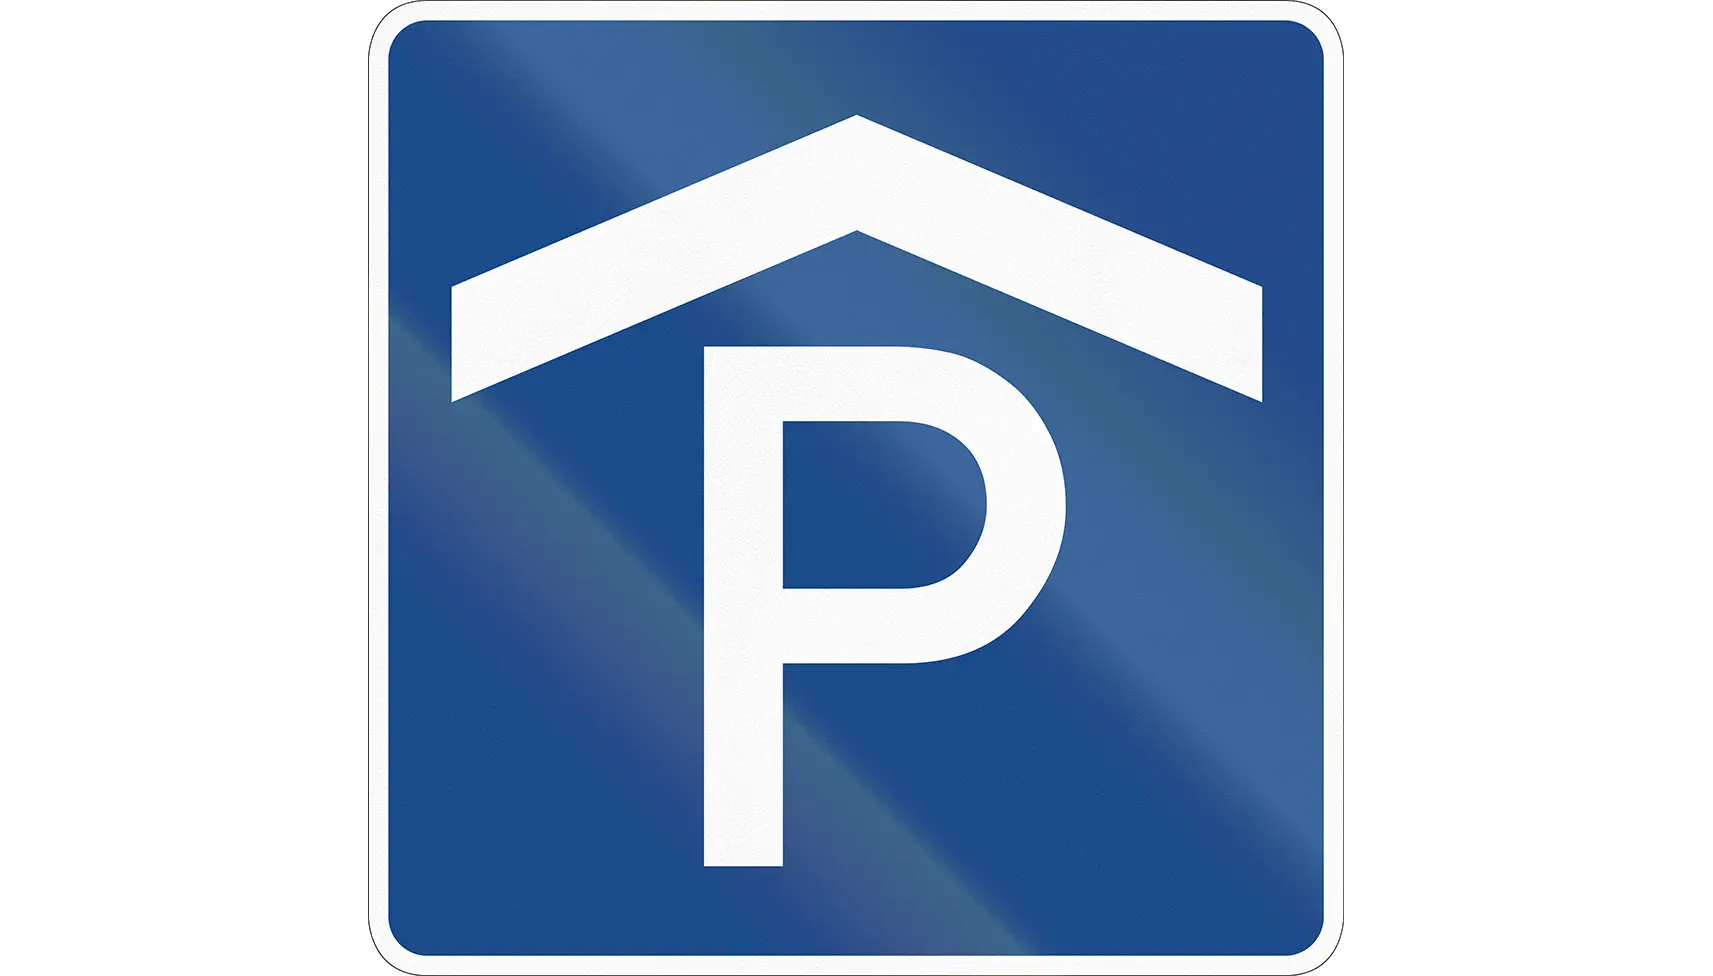 Ikon för parkeringshus, ett stort P med ett tak över.